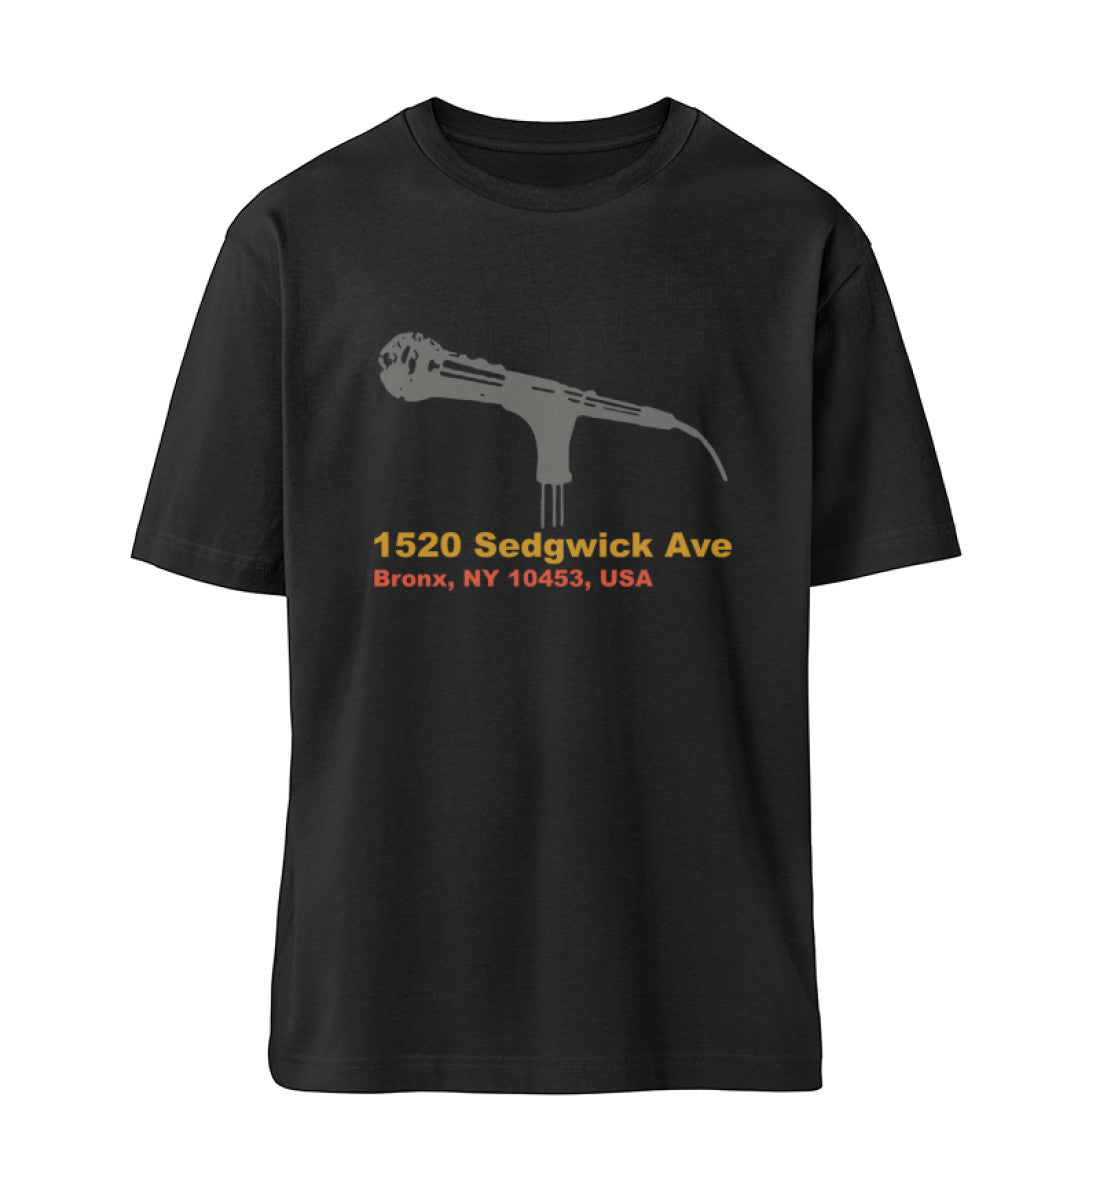 Schwarzes T-Shirt Unisex Relaxed Fit für Frauen und Männer bedruckt mit dem Design der Roger Rockawoo Kollektion Hip Hope 1520 Sedgwick Ave